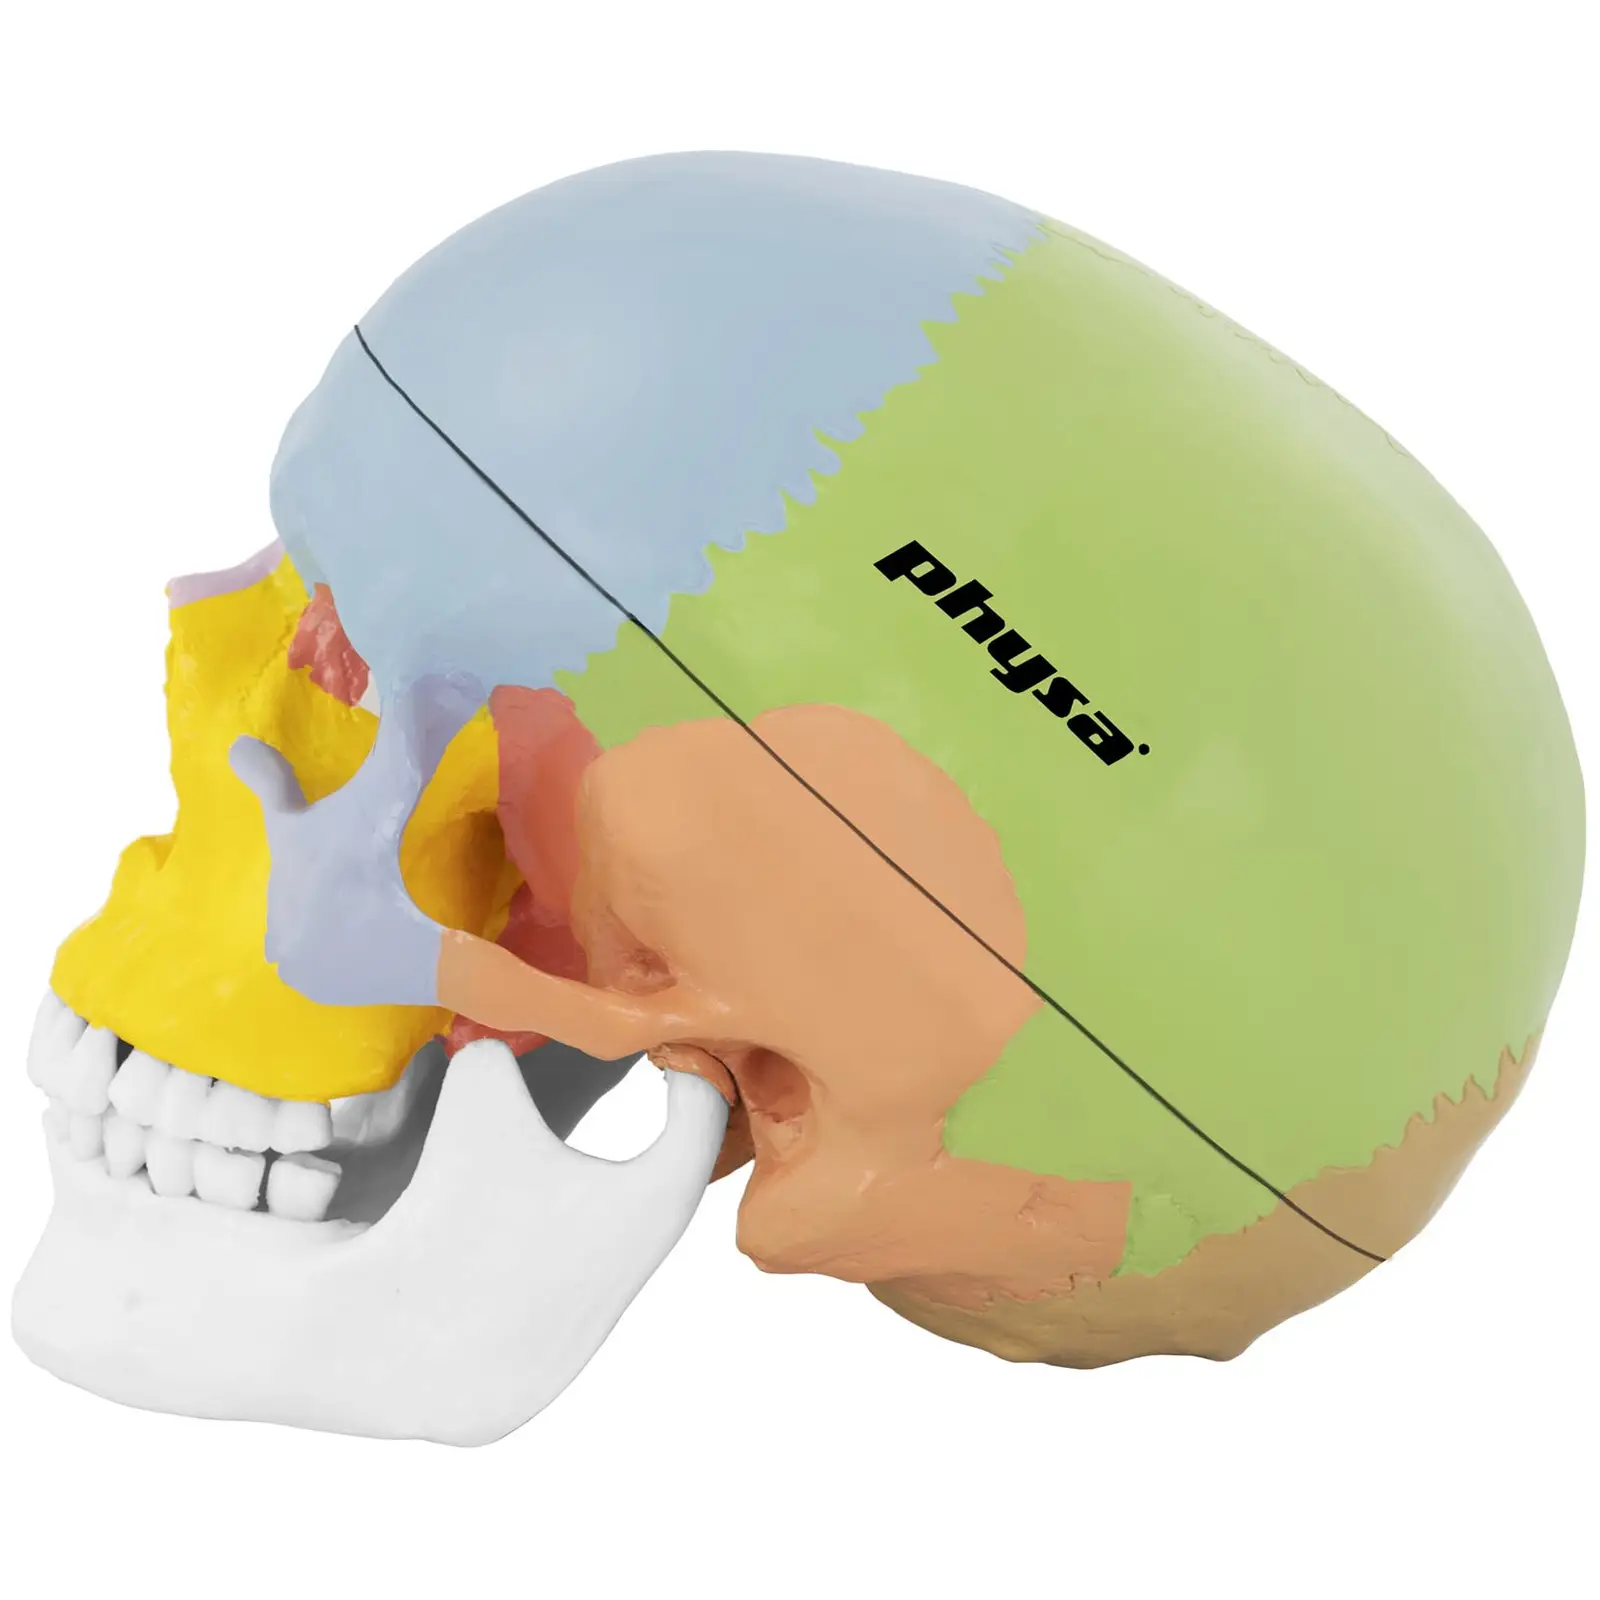 Maquette anatomique du crâne humain - en couleurs